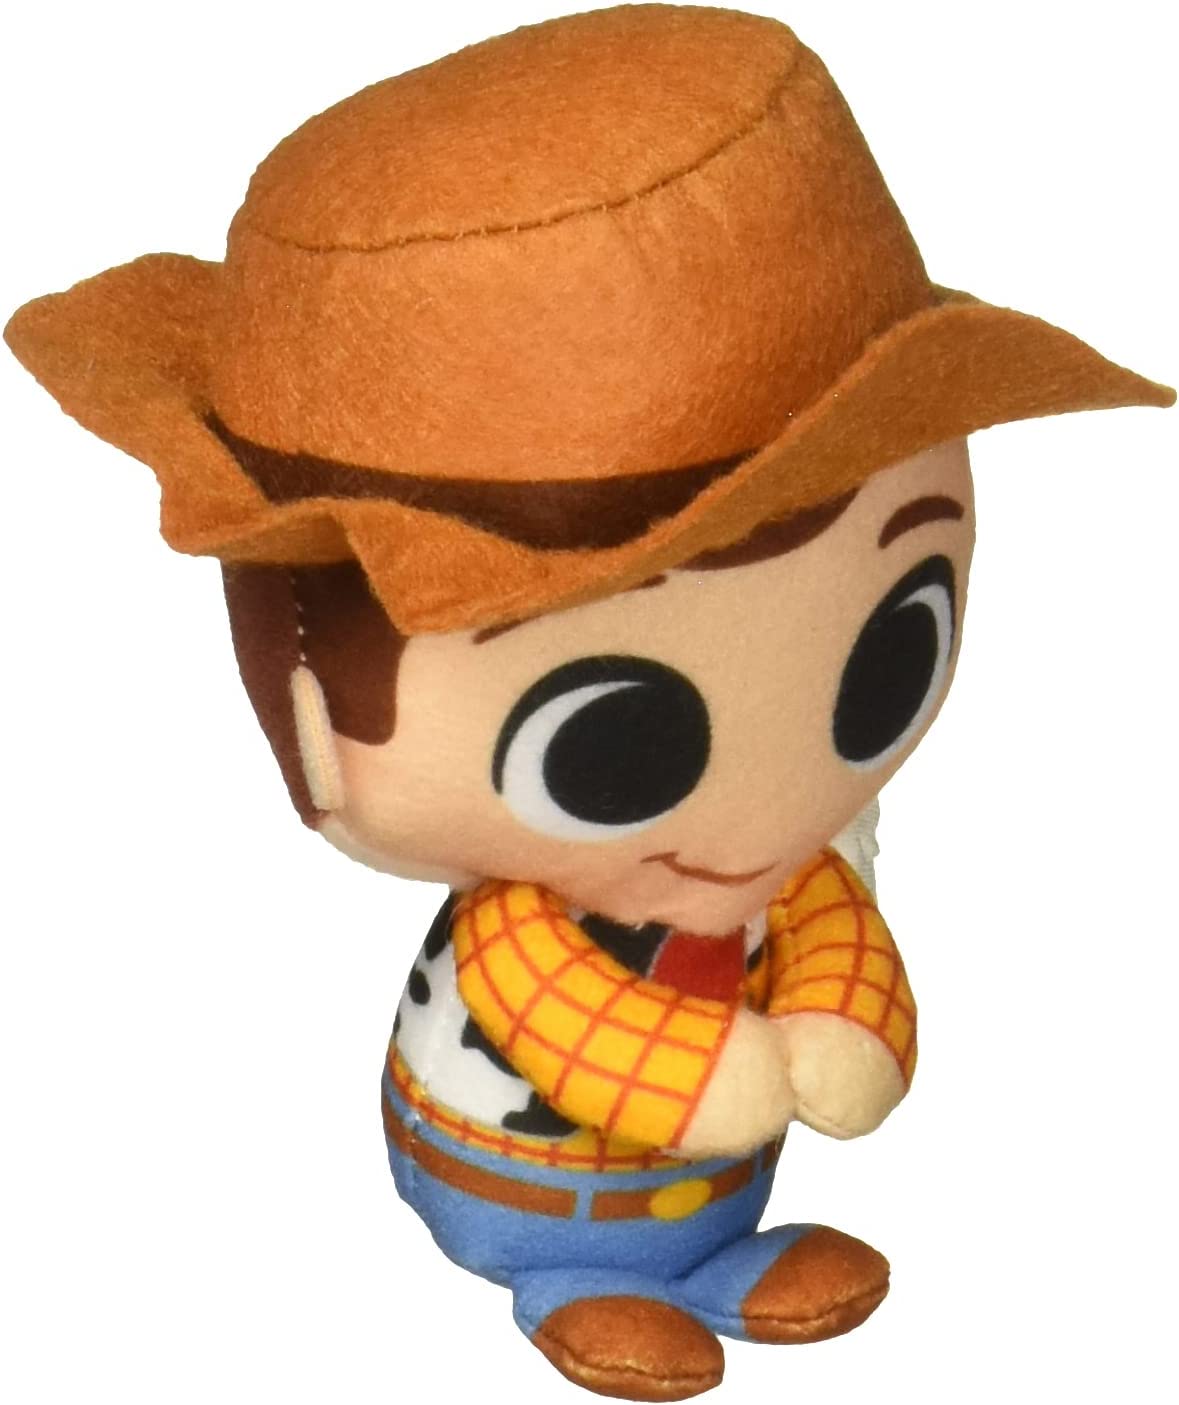 Funko Plush: Disney - Woody 4" (Toy Story) - Third Eye